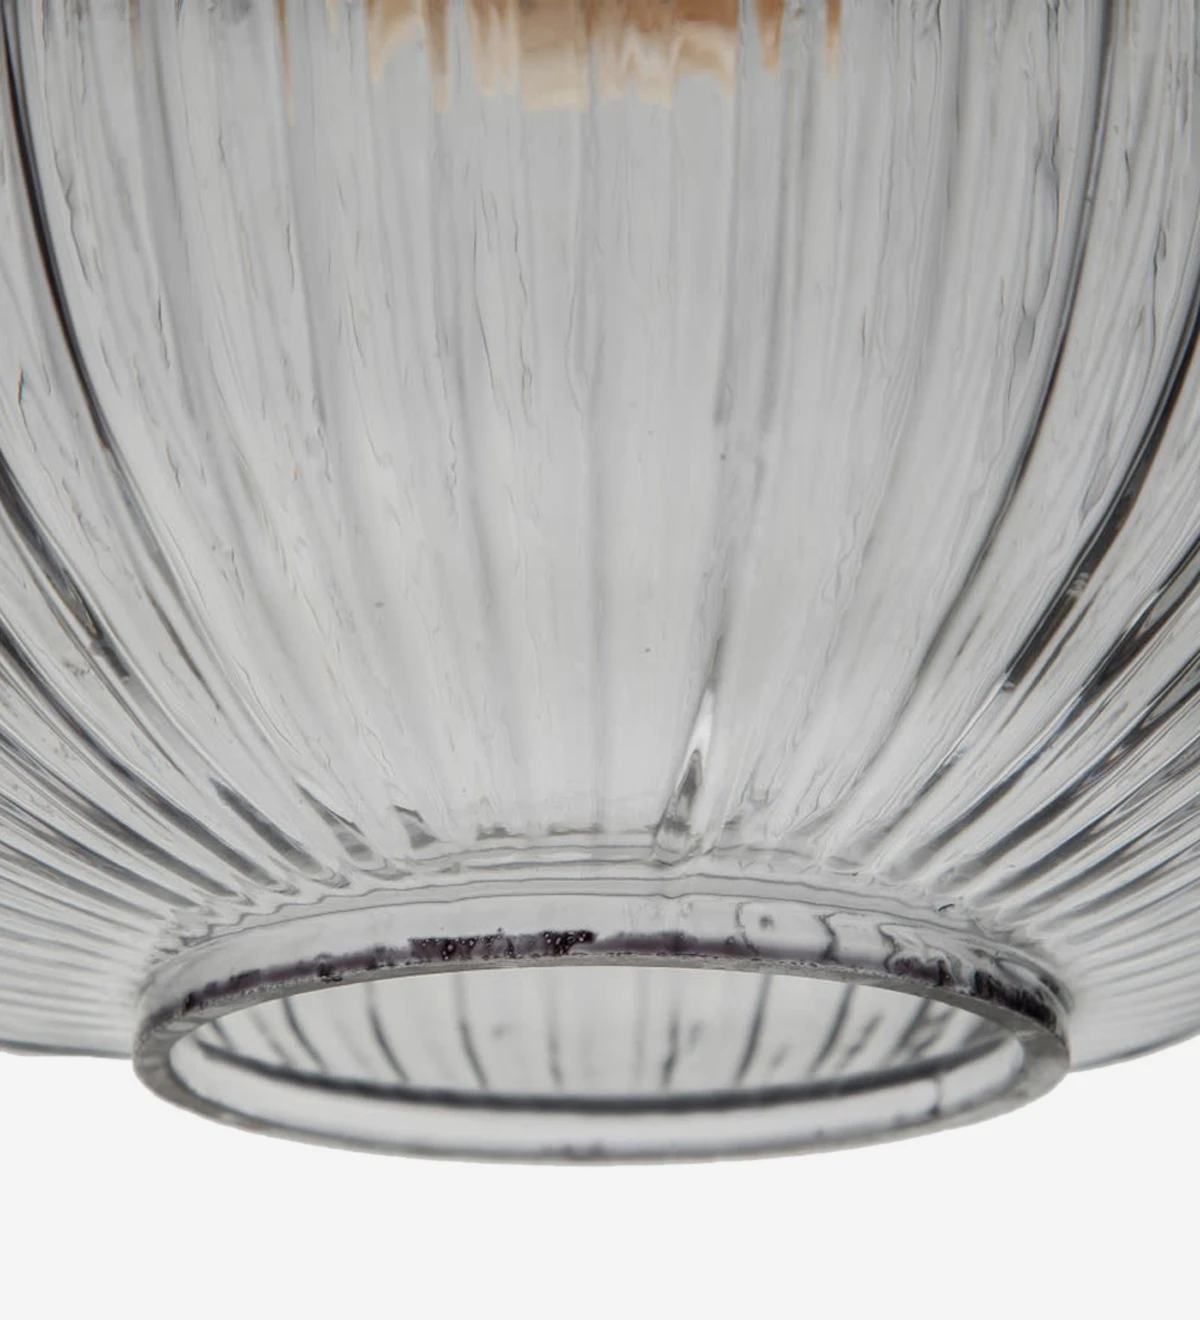 Lampe à suspension en métal noir avec abat-jour en verre transparent.